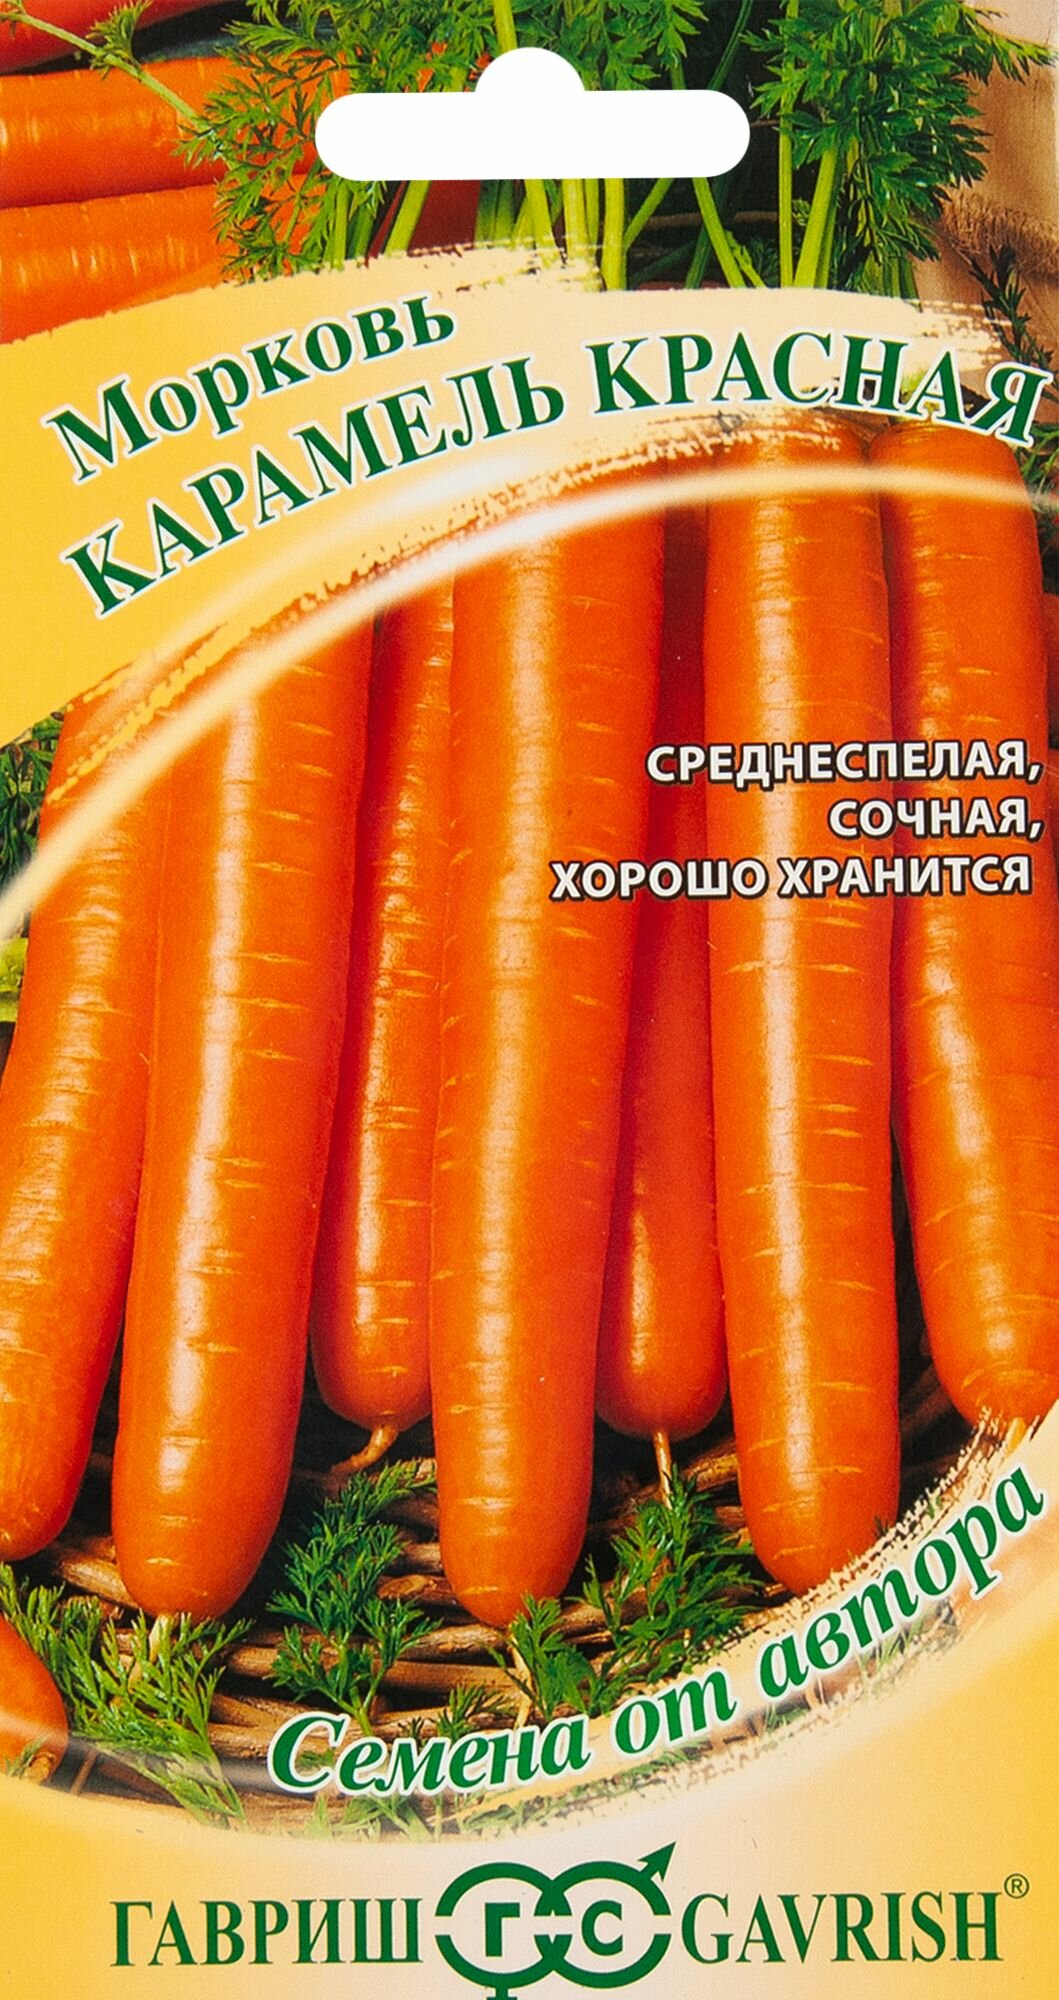 Морковь Карамель красная серия Семена от автора 150 шт.